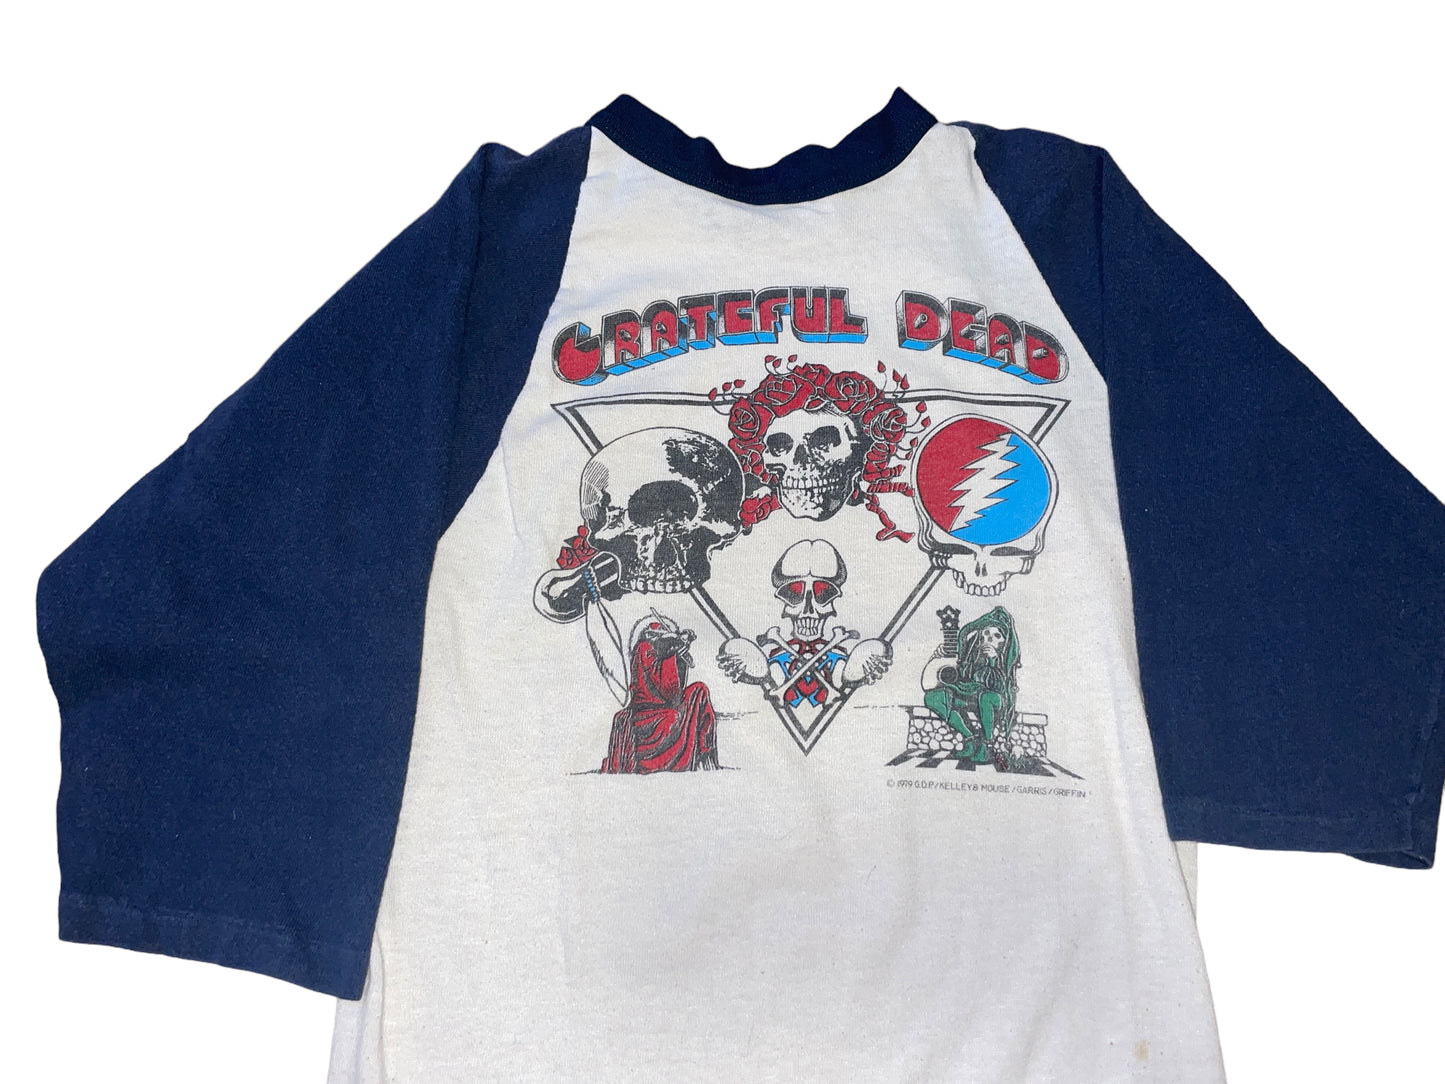 Vintage 1979 Grateful Dead Shirt